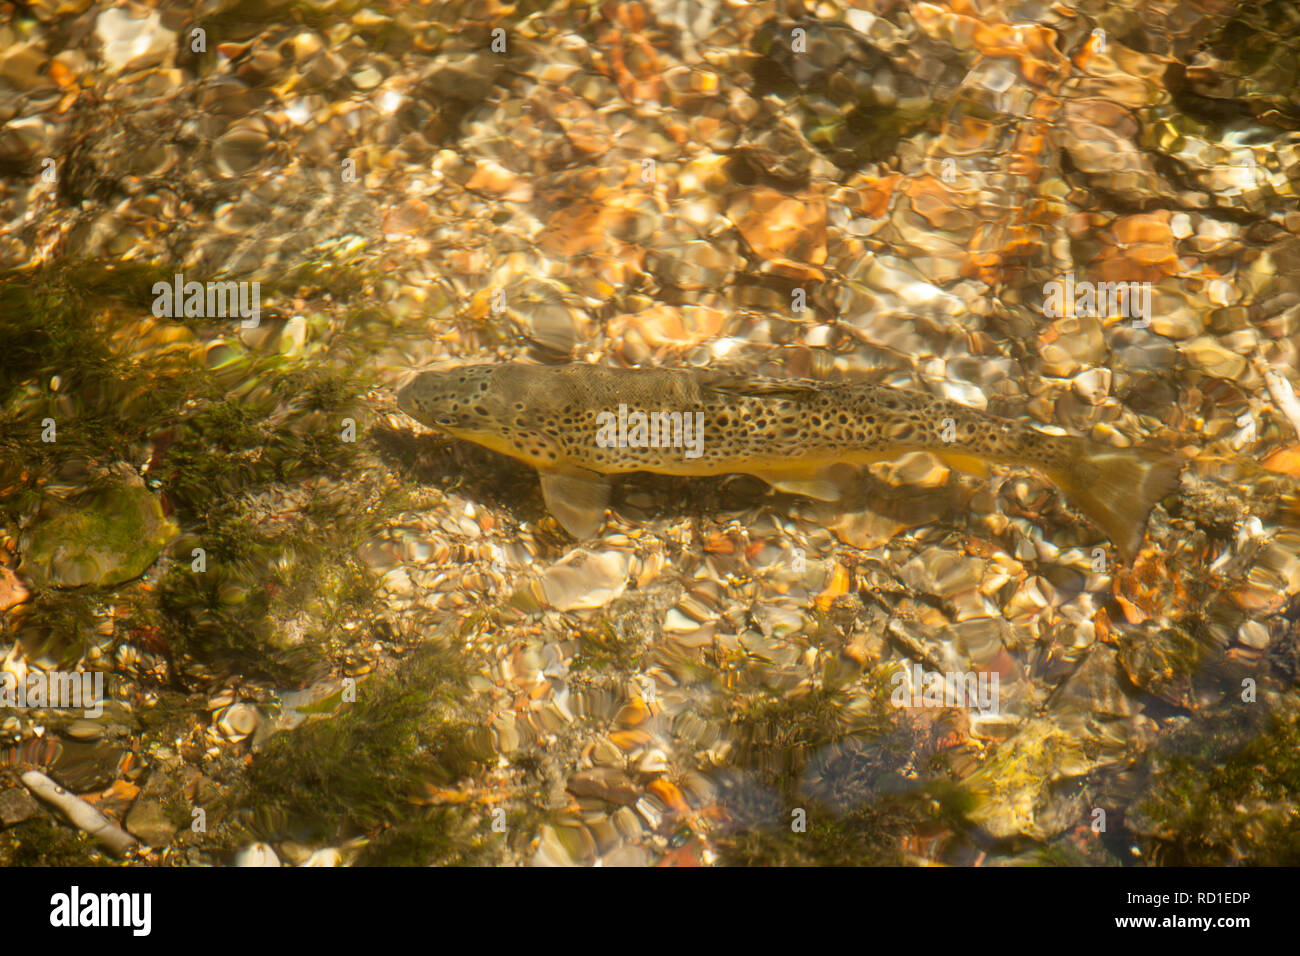 Una trota fario Salmo trutta, nuotare in un chalk stream. Wiltshire, Inghilterra UK GB Foto Stock